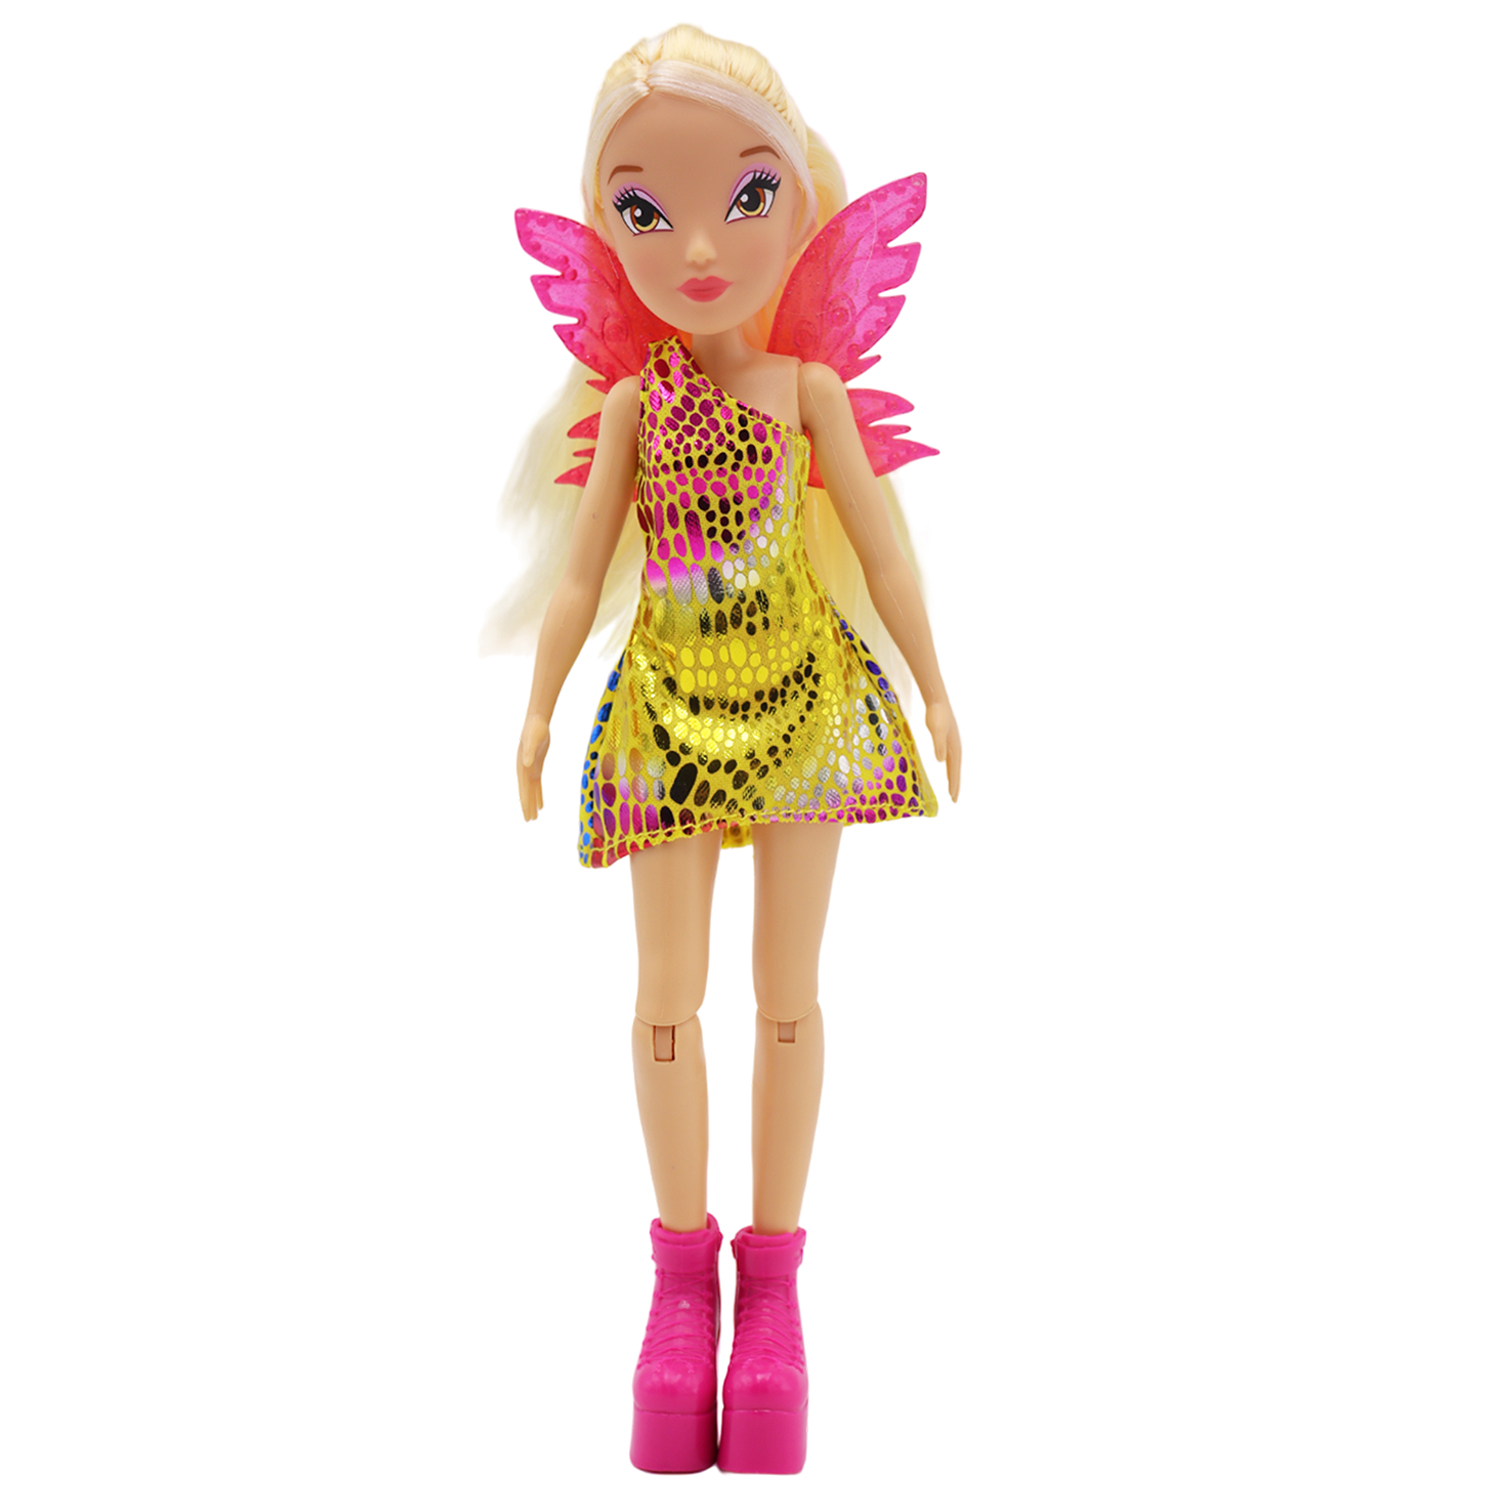 Кукла шарнирная Winx Club Стелла с крыльями, 24 см, IW01552303 кукла winx club твигги стелла